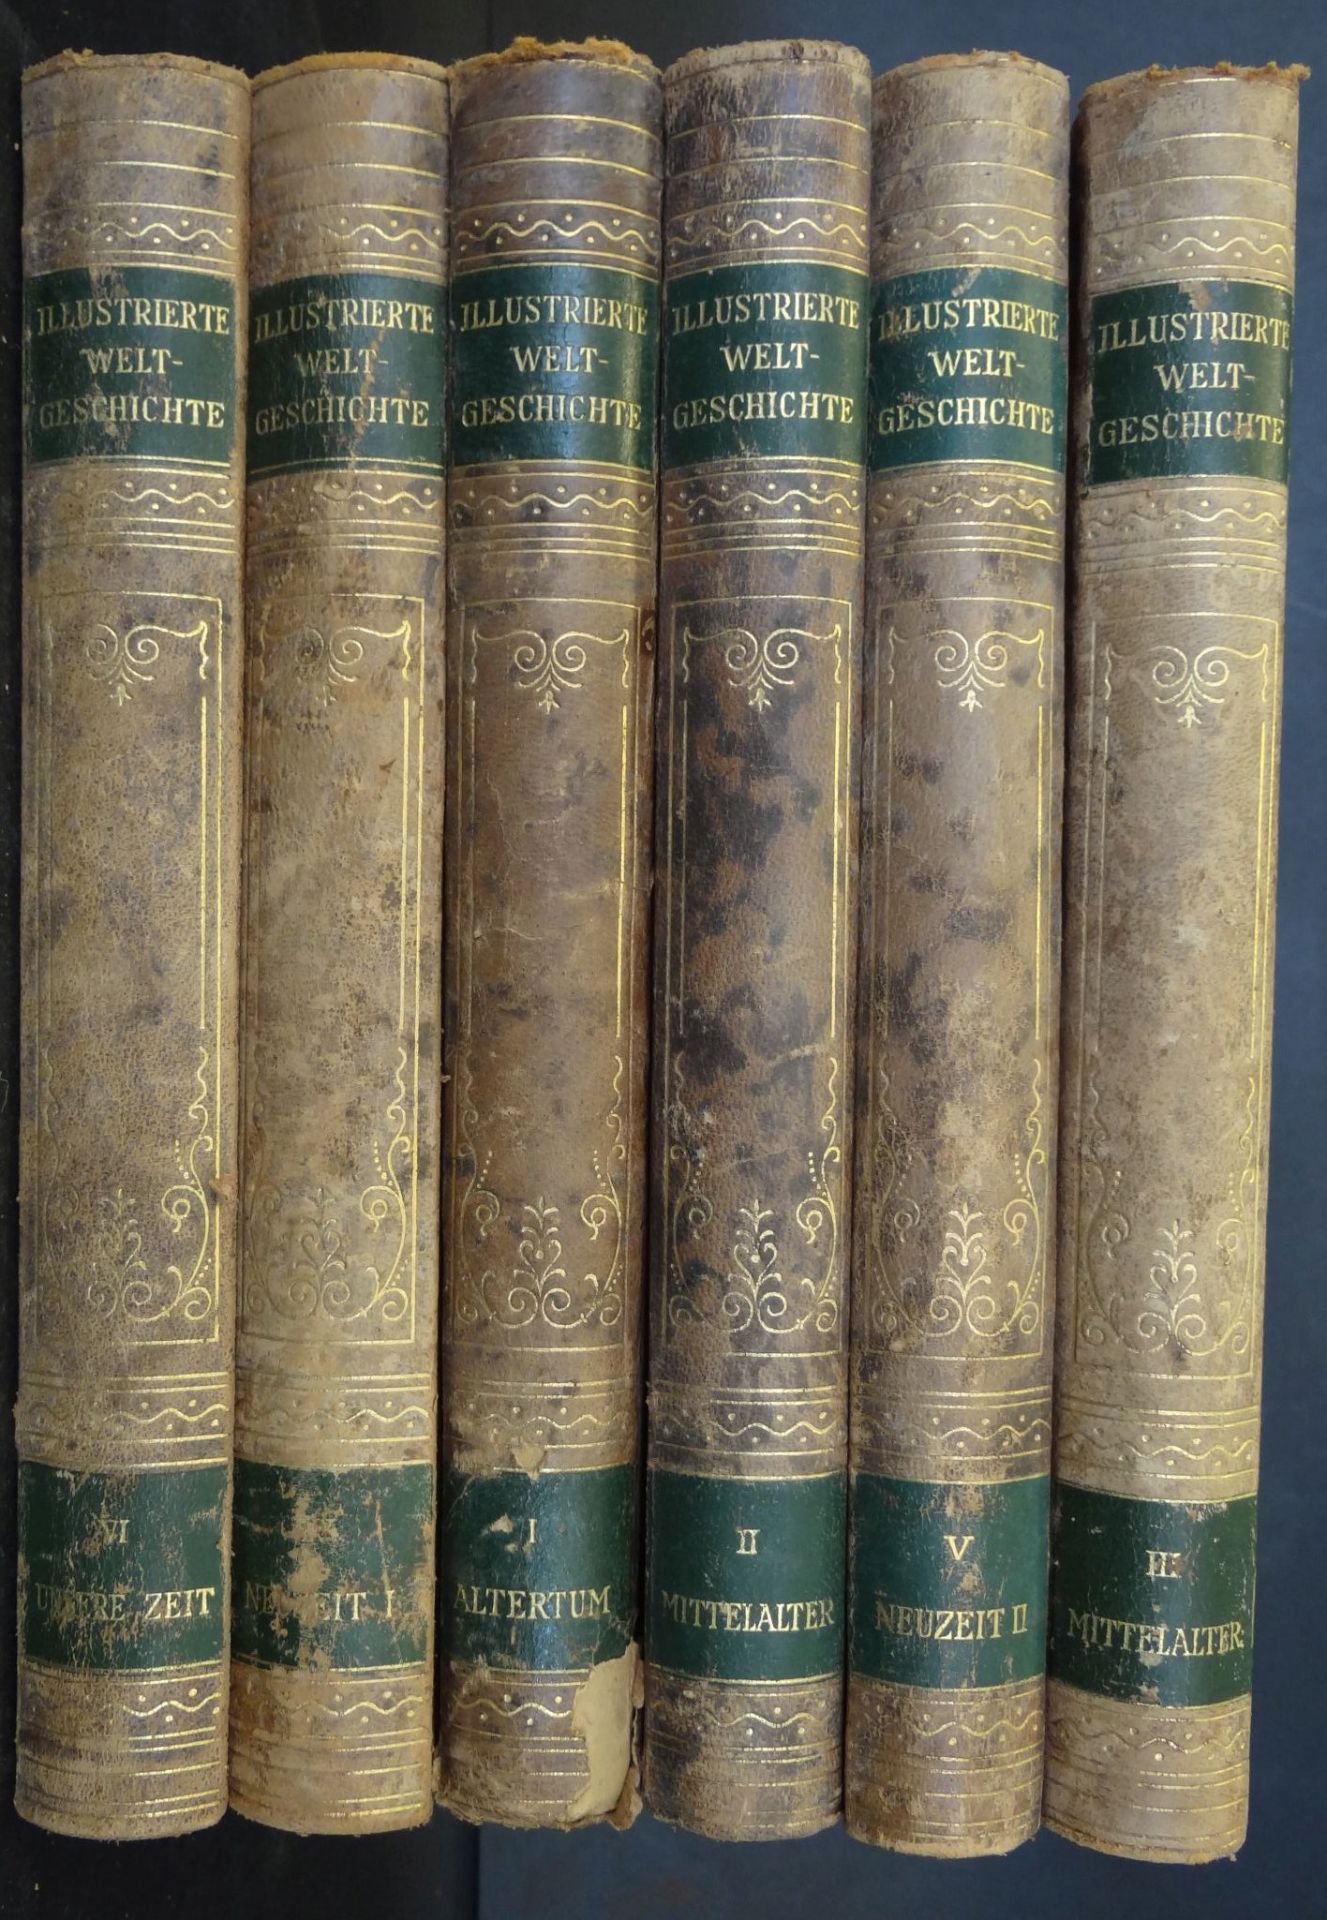 LEHMANN und PETERSEN "Illustrierte Weltgeschichte" um 1900, 6 Bände, gut erhalte